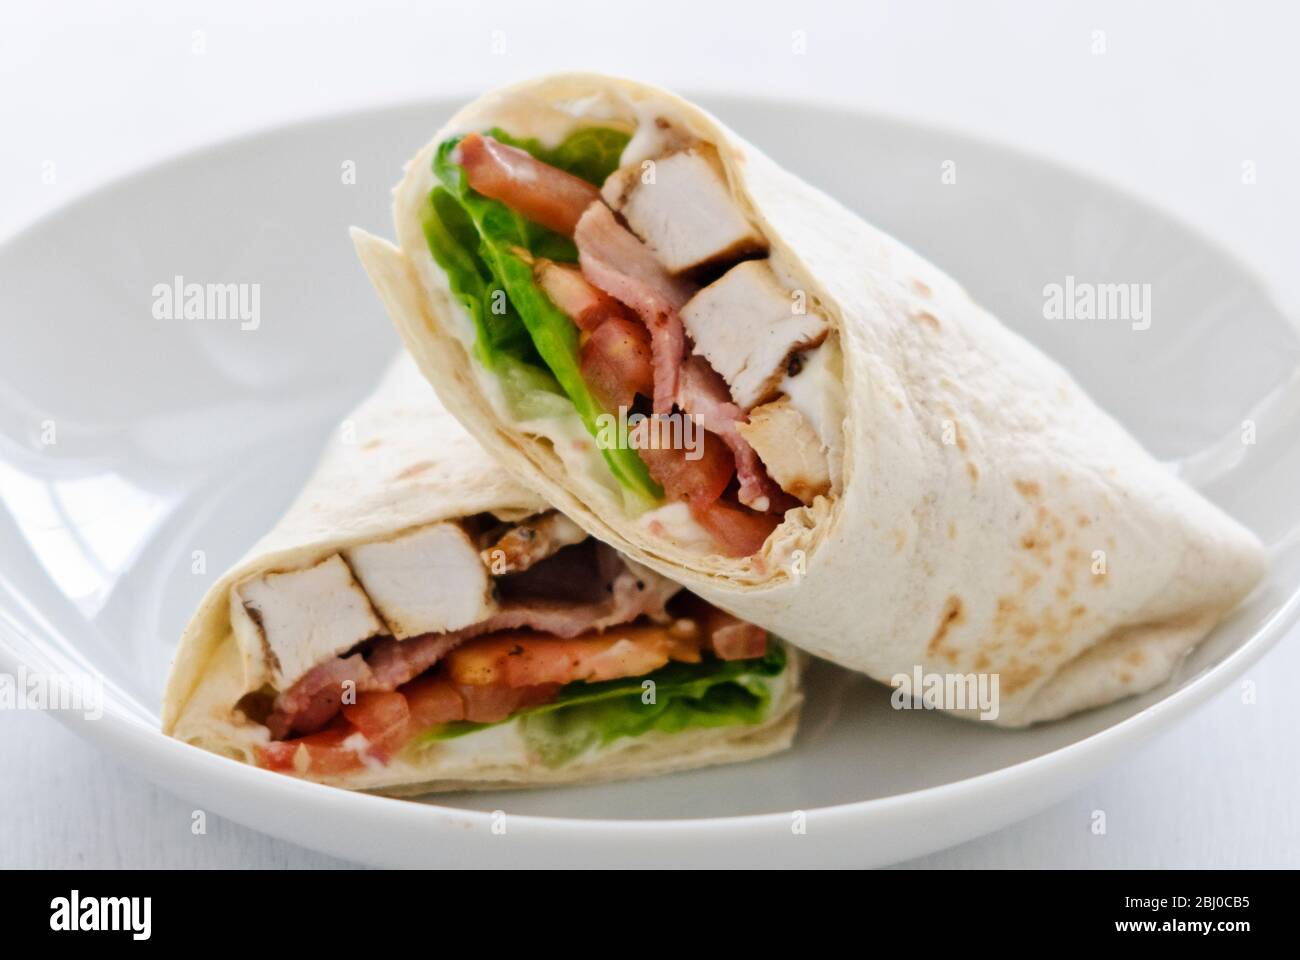 Sandwich avec poulet, bacon, tomate et laitue - Banque D'Images